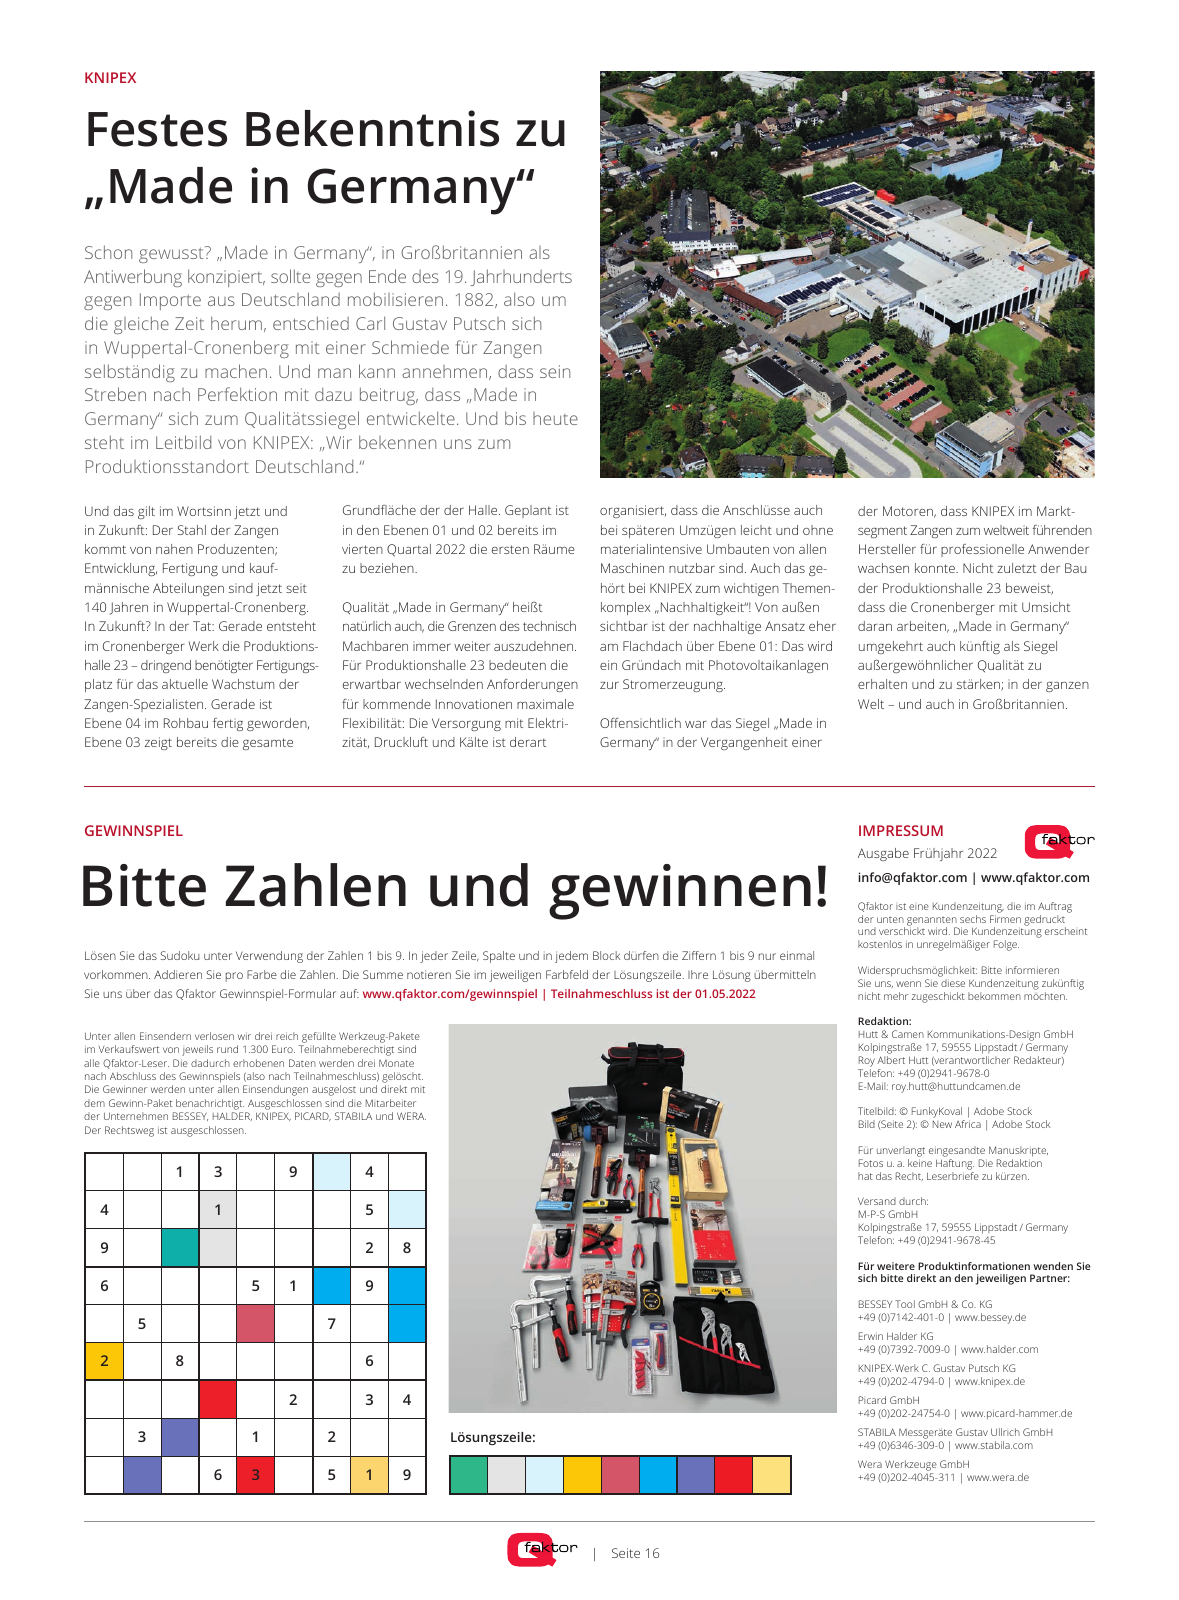 Vorschau Qfaktor Zeitung – Ausgabe Frühjahr 2022 Seite 16